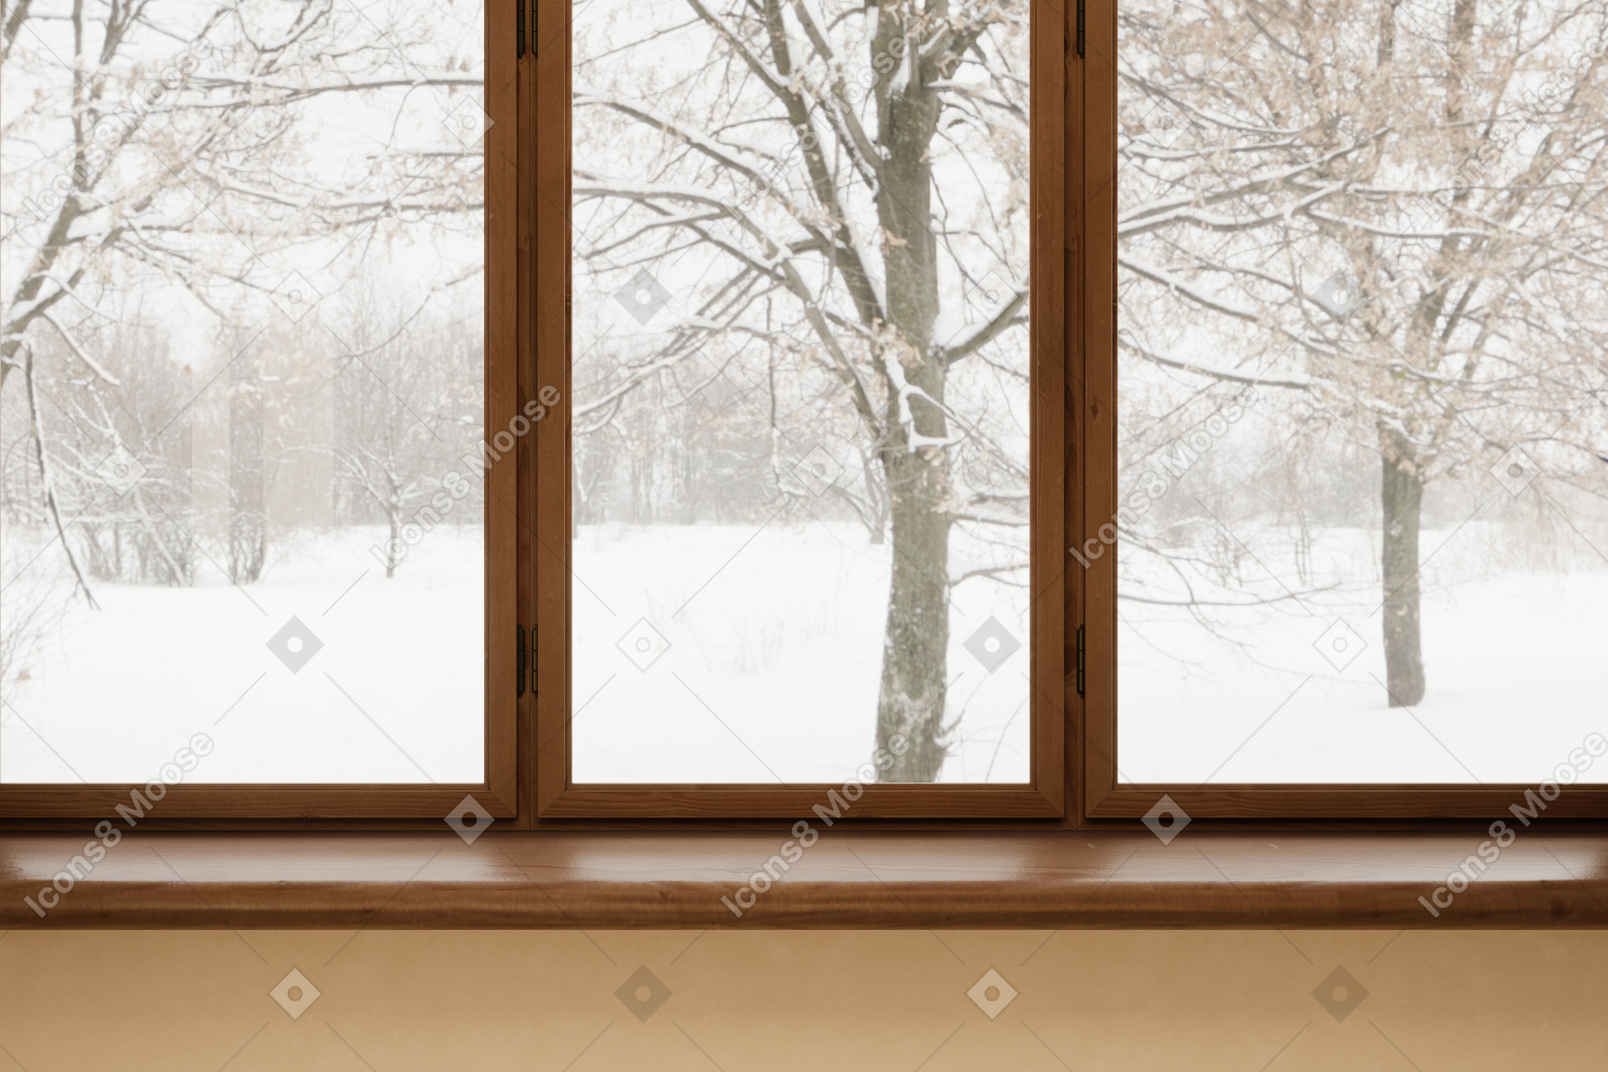 Fenster mit verschneiter landschaft draußen